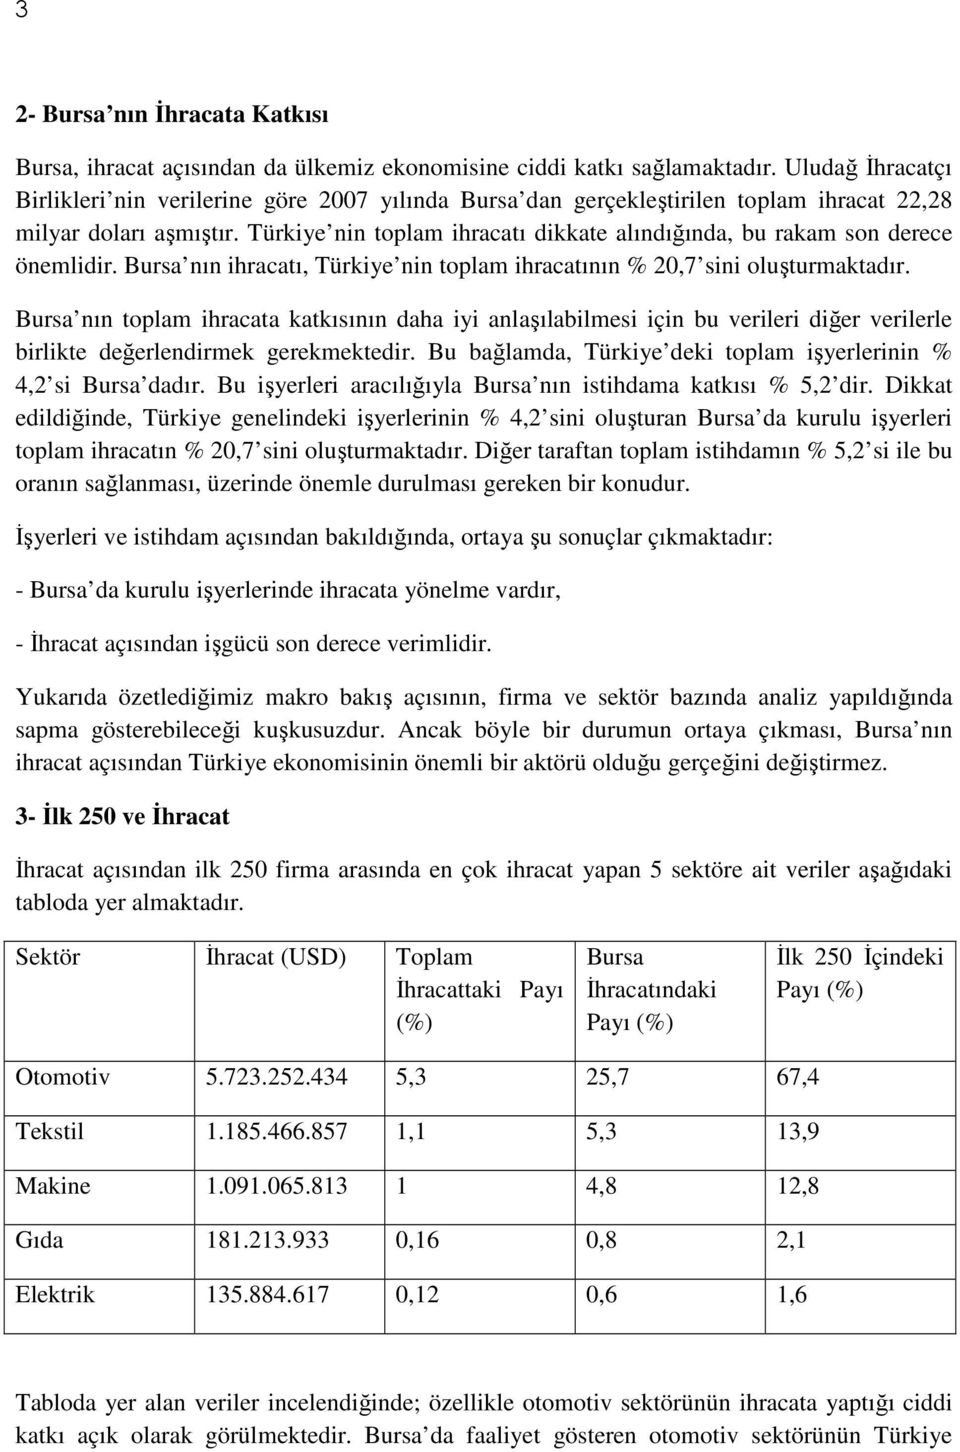 Türkiye nin toplam ihracatı dikkate alındığında, bu rakam son derece önemlidir. Bursa nın ihracatı, Türkiye nin toplam ihracatının % 20,7 sini oluşturmaktadır.